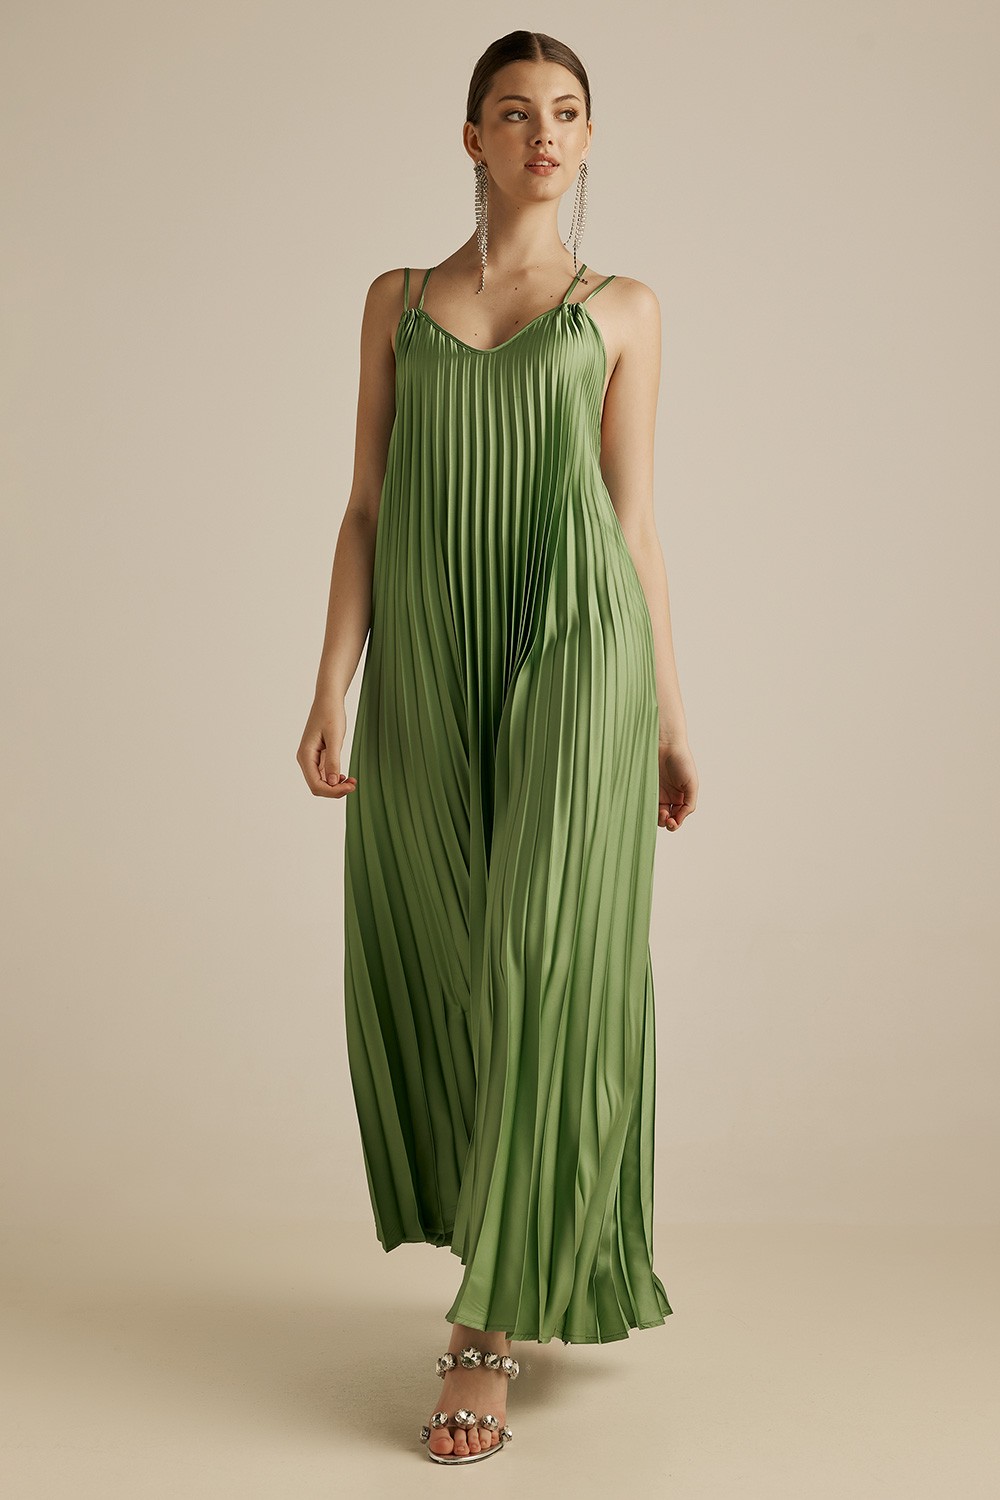 Imperial φόρεμα πλισέ με spaghetti straps